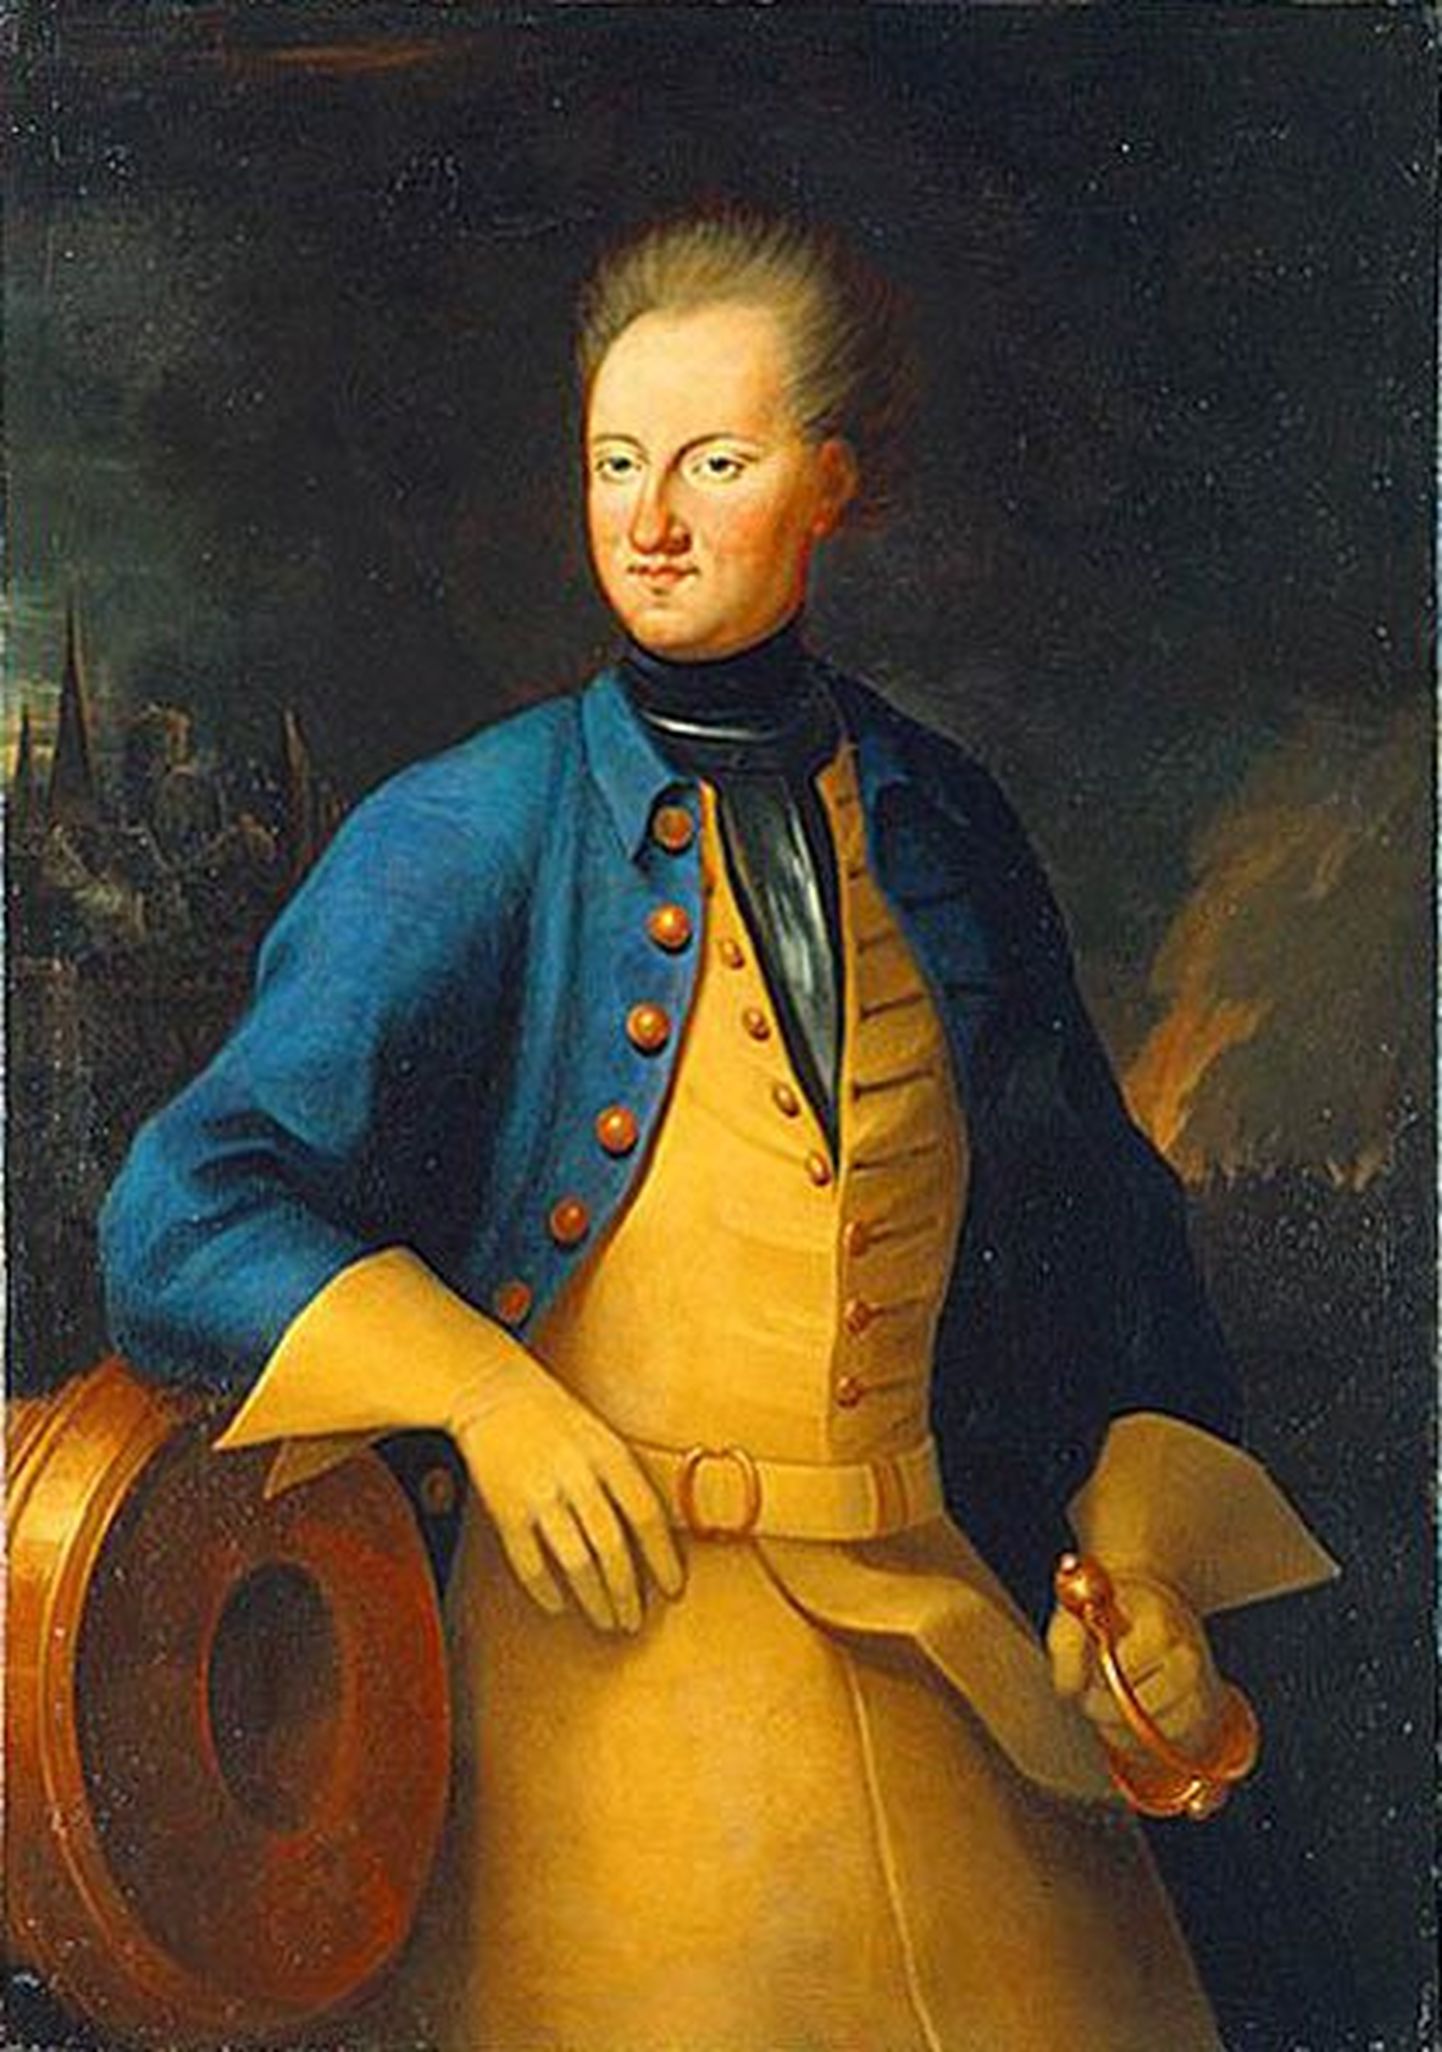 Rootsi kningas Karl XII (1697 - 1718). Axel Sparre maal aastast 1715